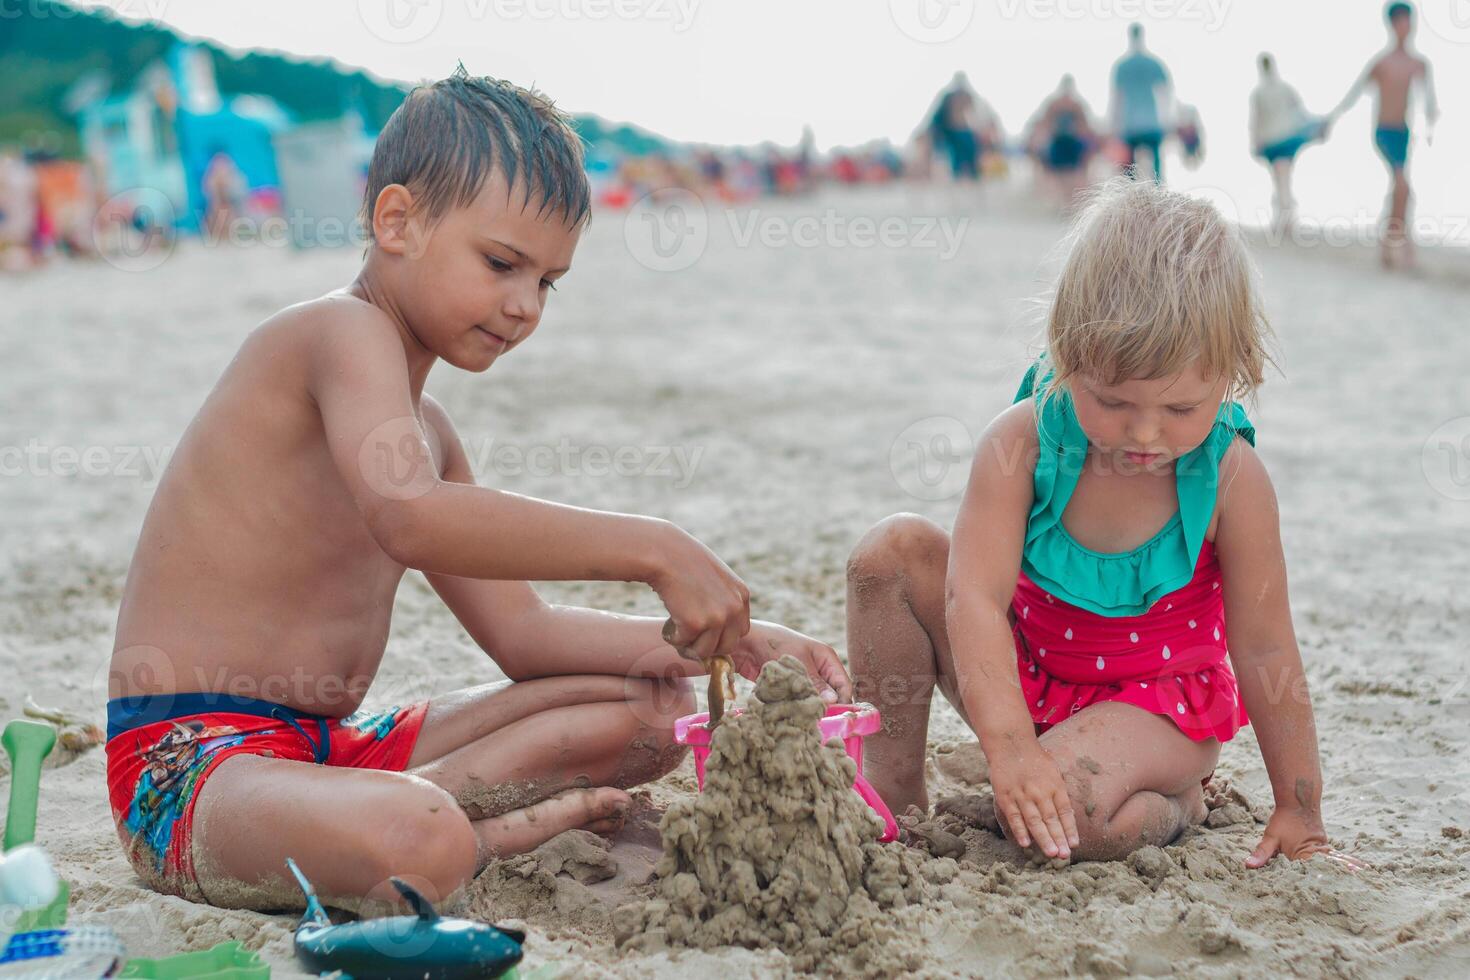 bror och syster framställning sand slott på de strand i värma sommar dag.familj sommar högtider koncept.stäng upp. hög kvalitet Foto